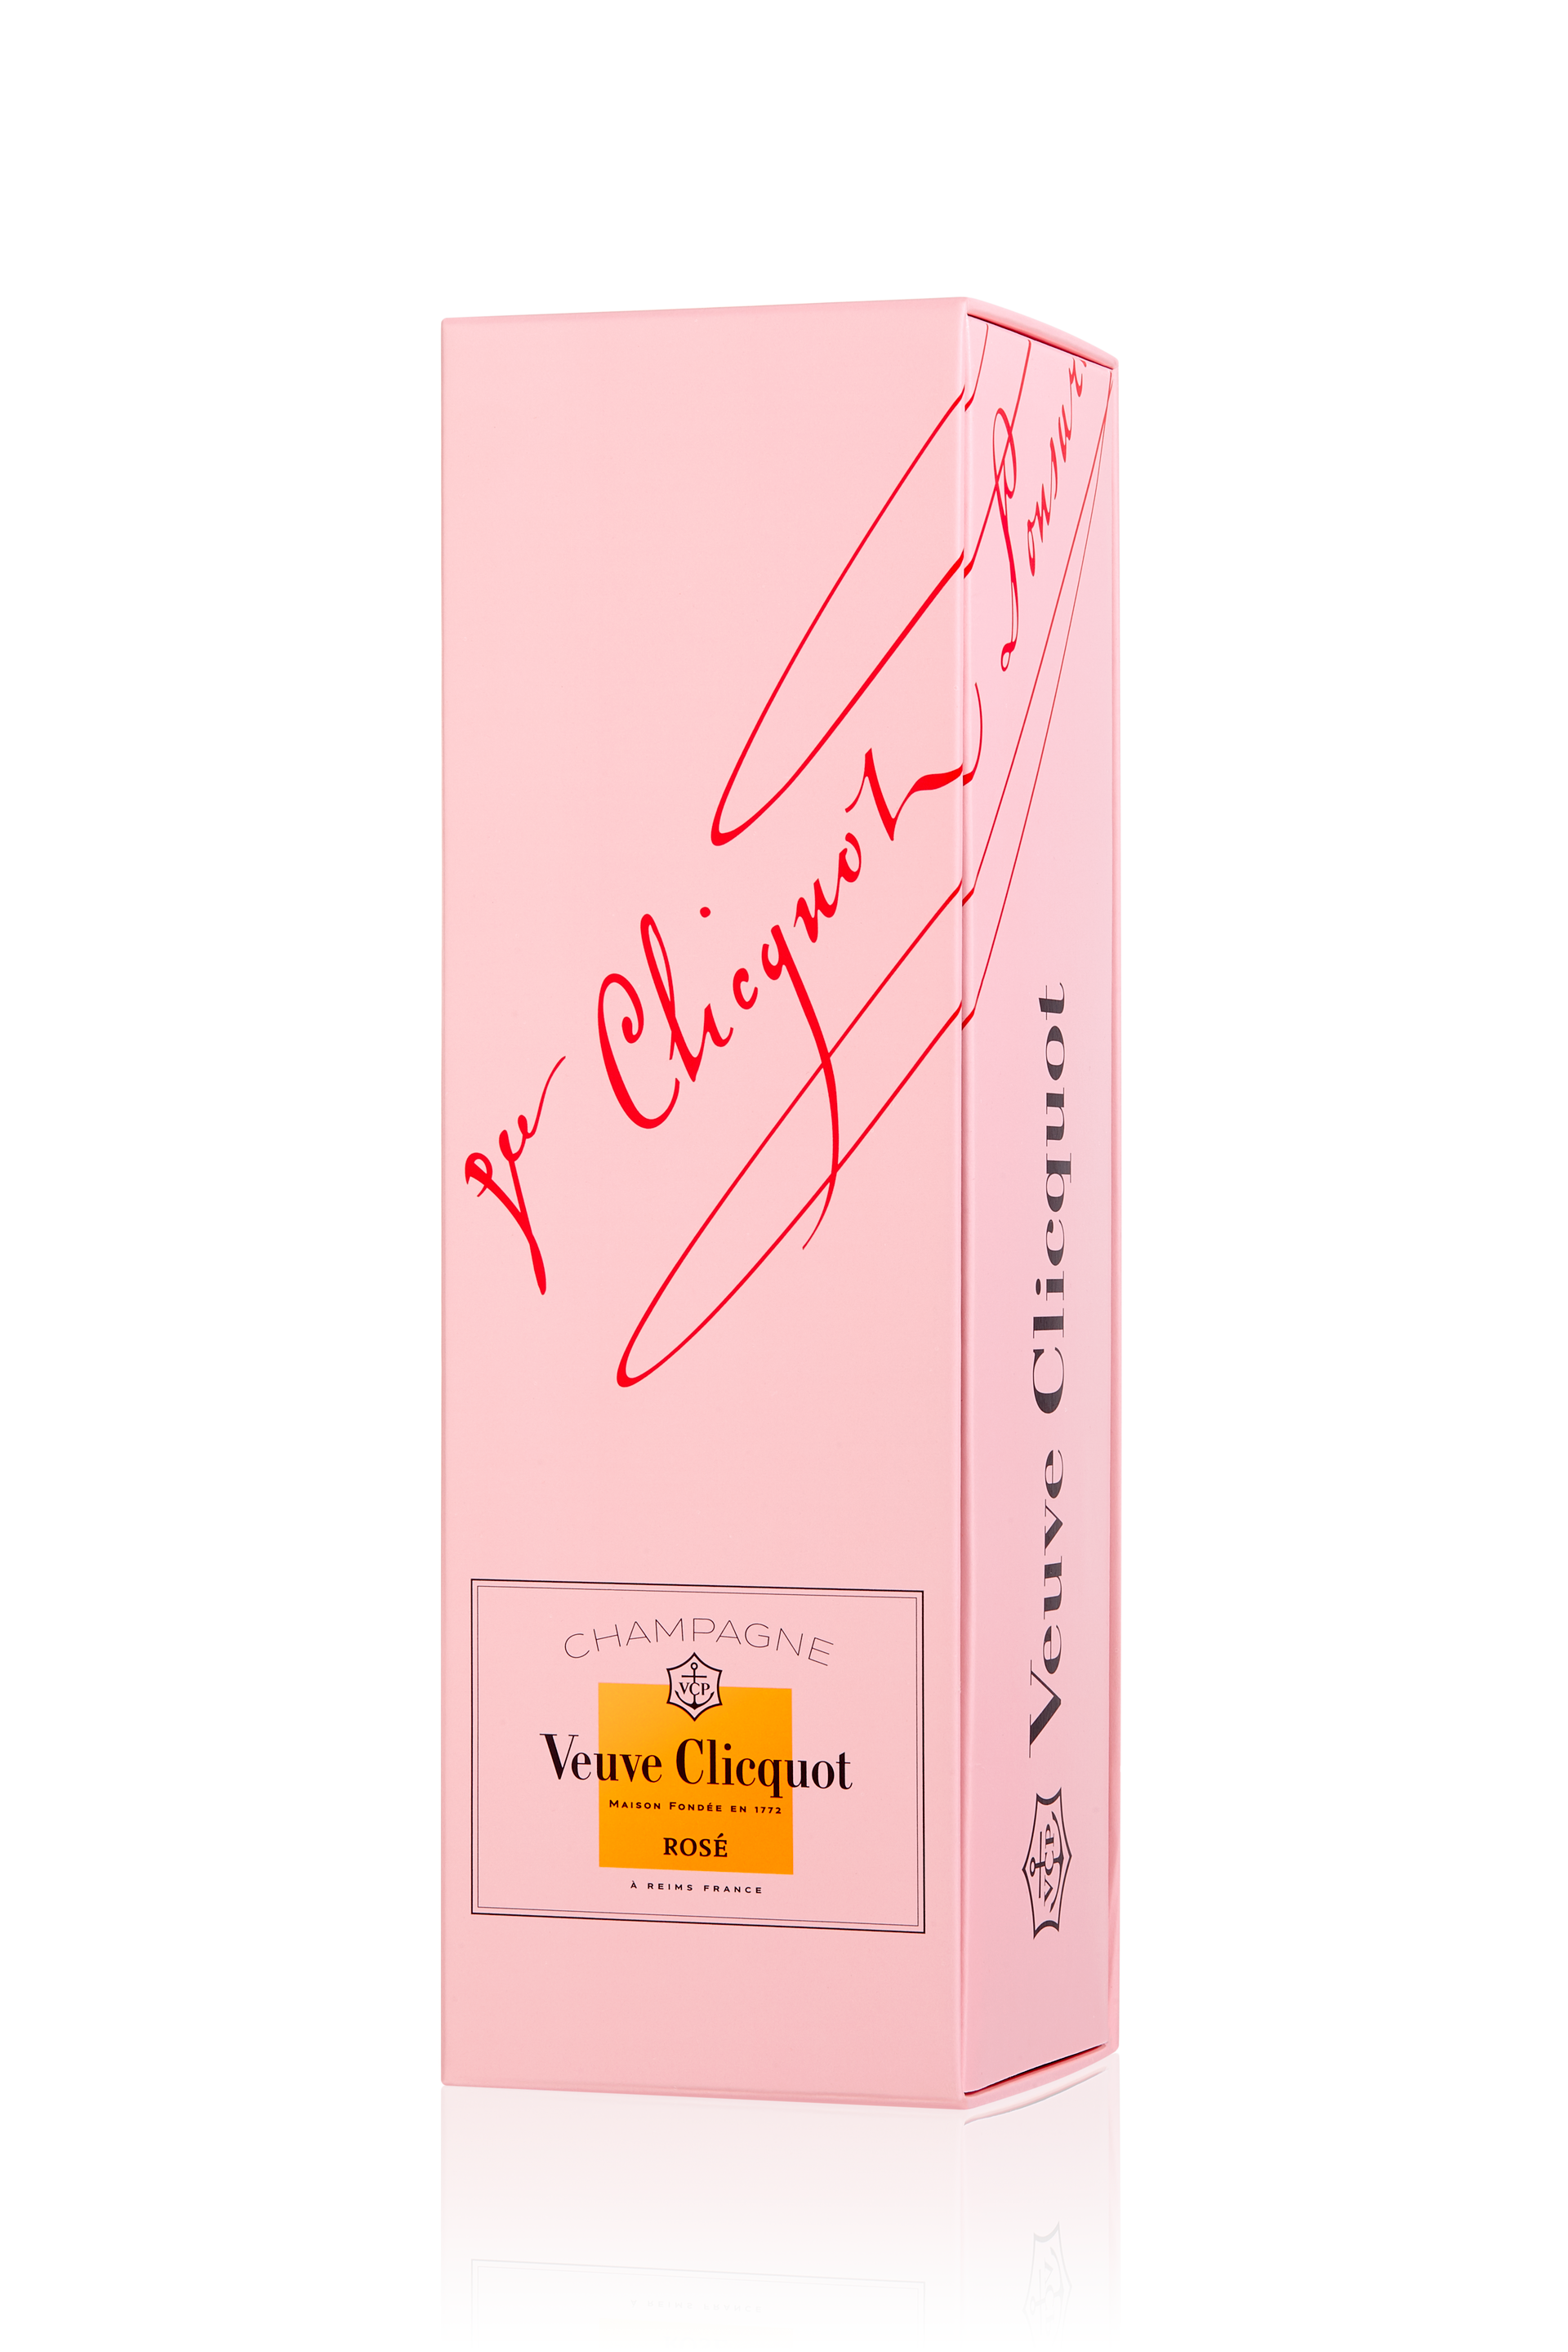 Veuve Clicquot Ponsardin Rosé 75CL